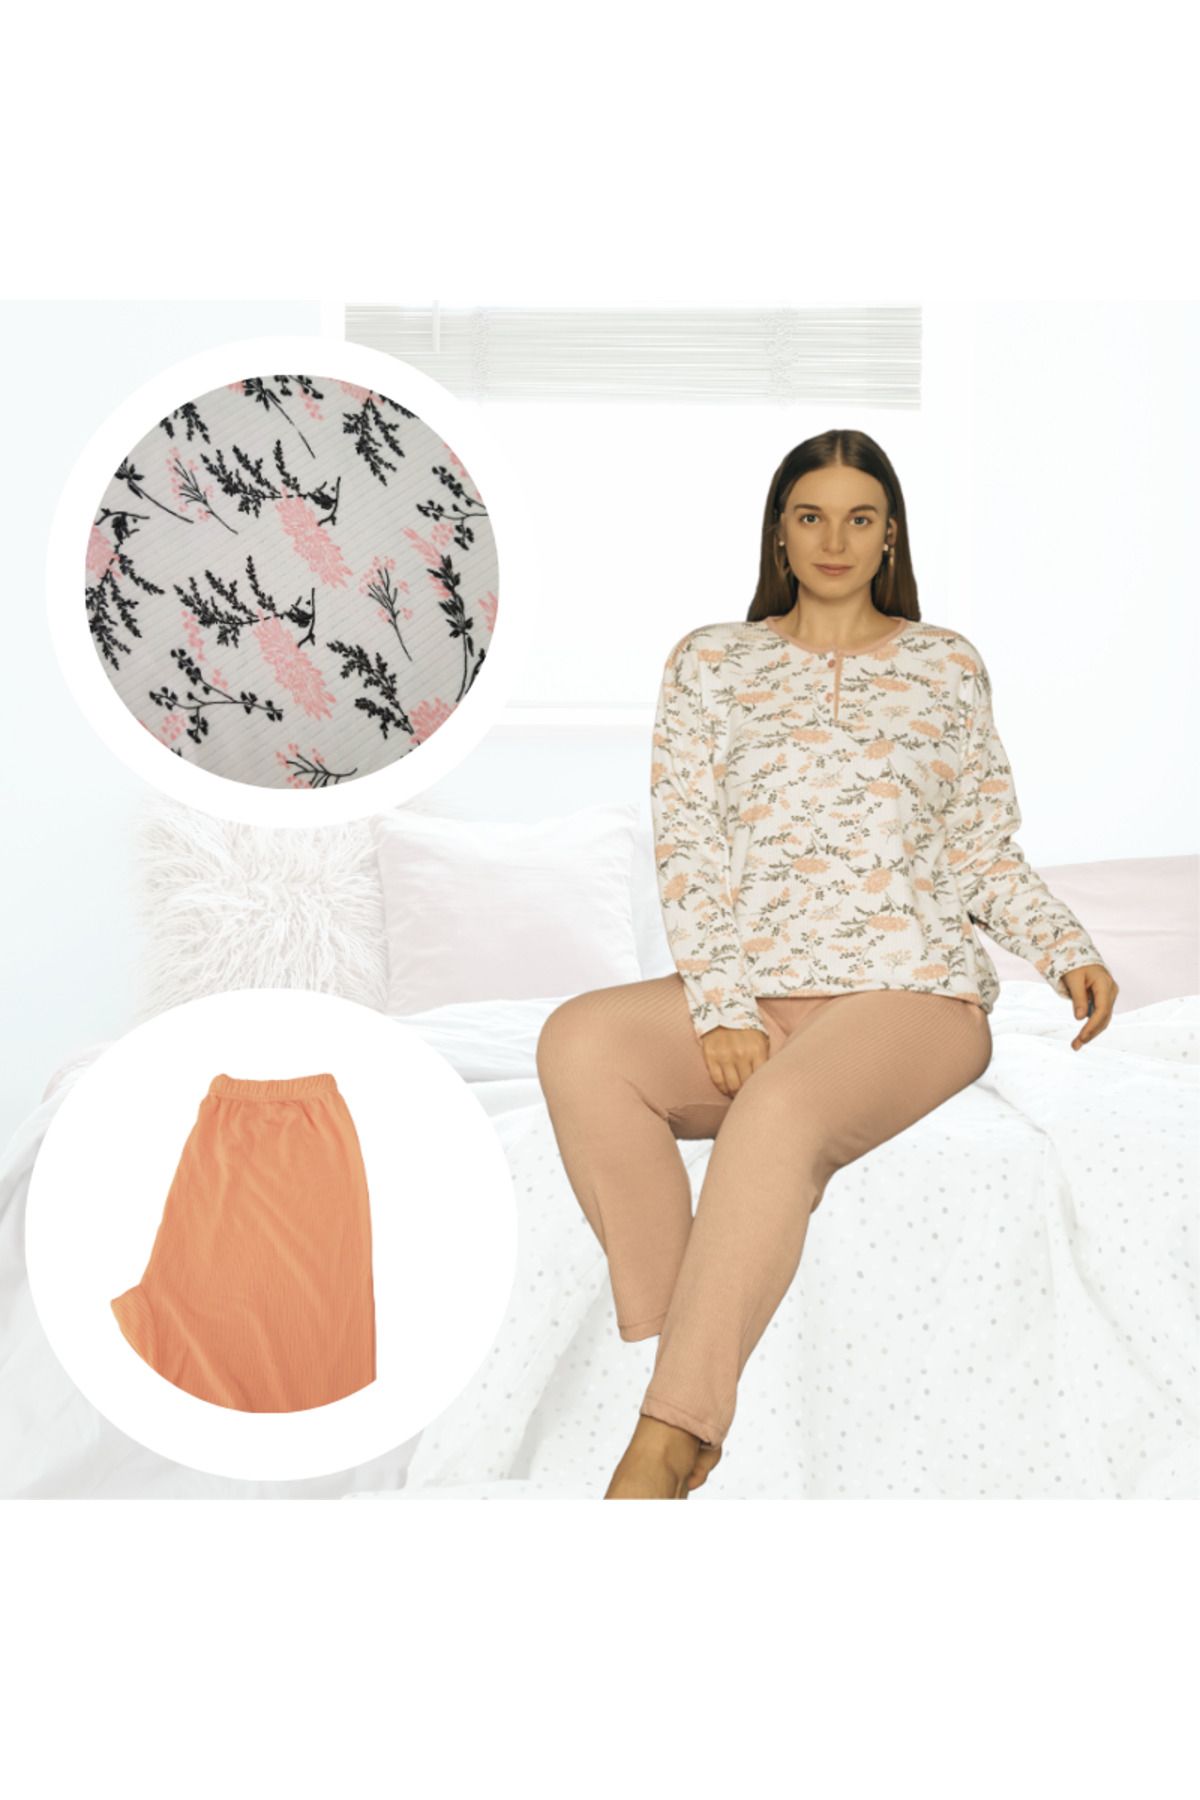 Gülfirik Tasarım Yavruağzı Rengi Iri Çiçek Desenli Şardonlu Interlok Kumaştan Kadın Büyük Beden Anne Pijama Takımı